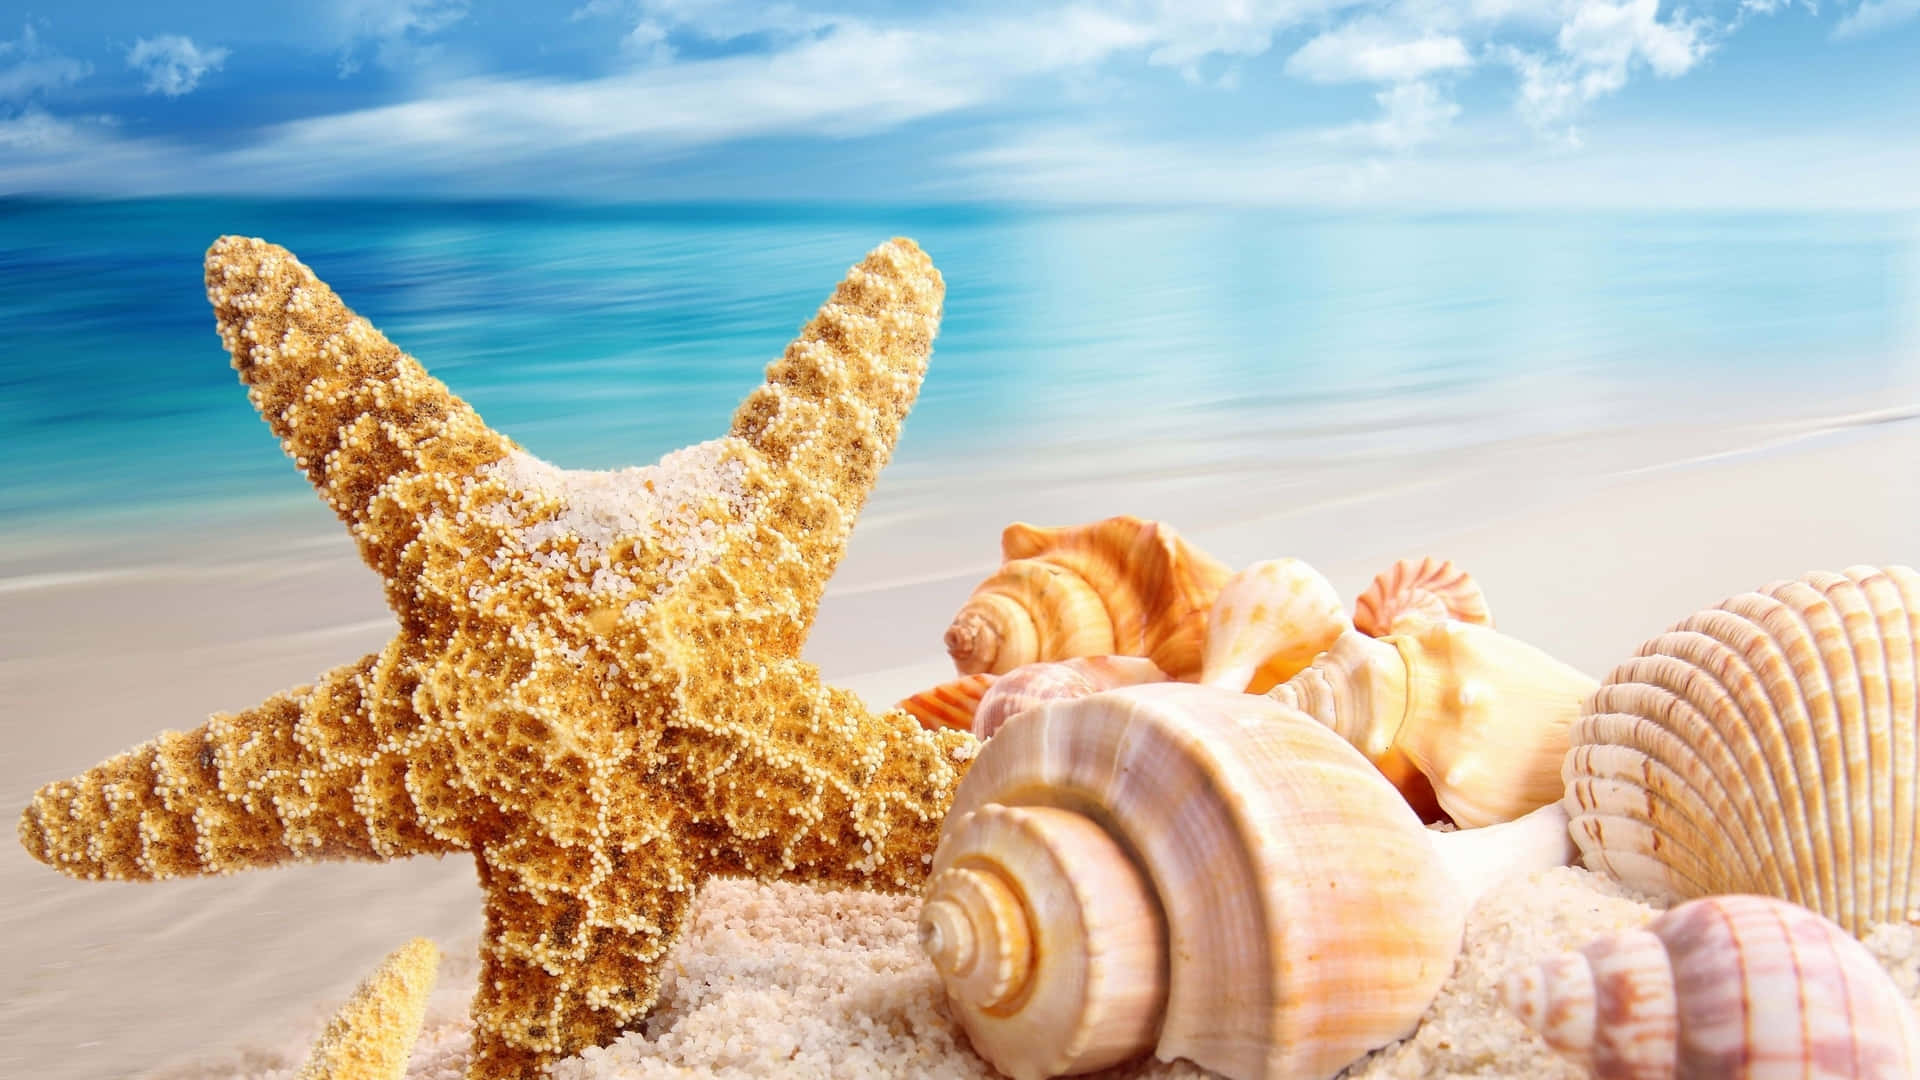 Make Your Next Summer Vacation A Beach Getaway